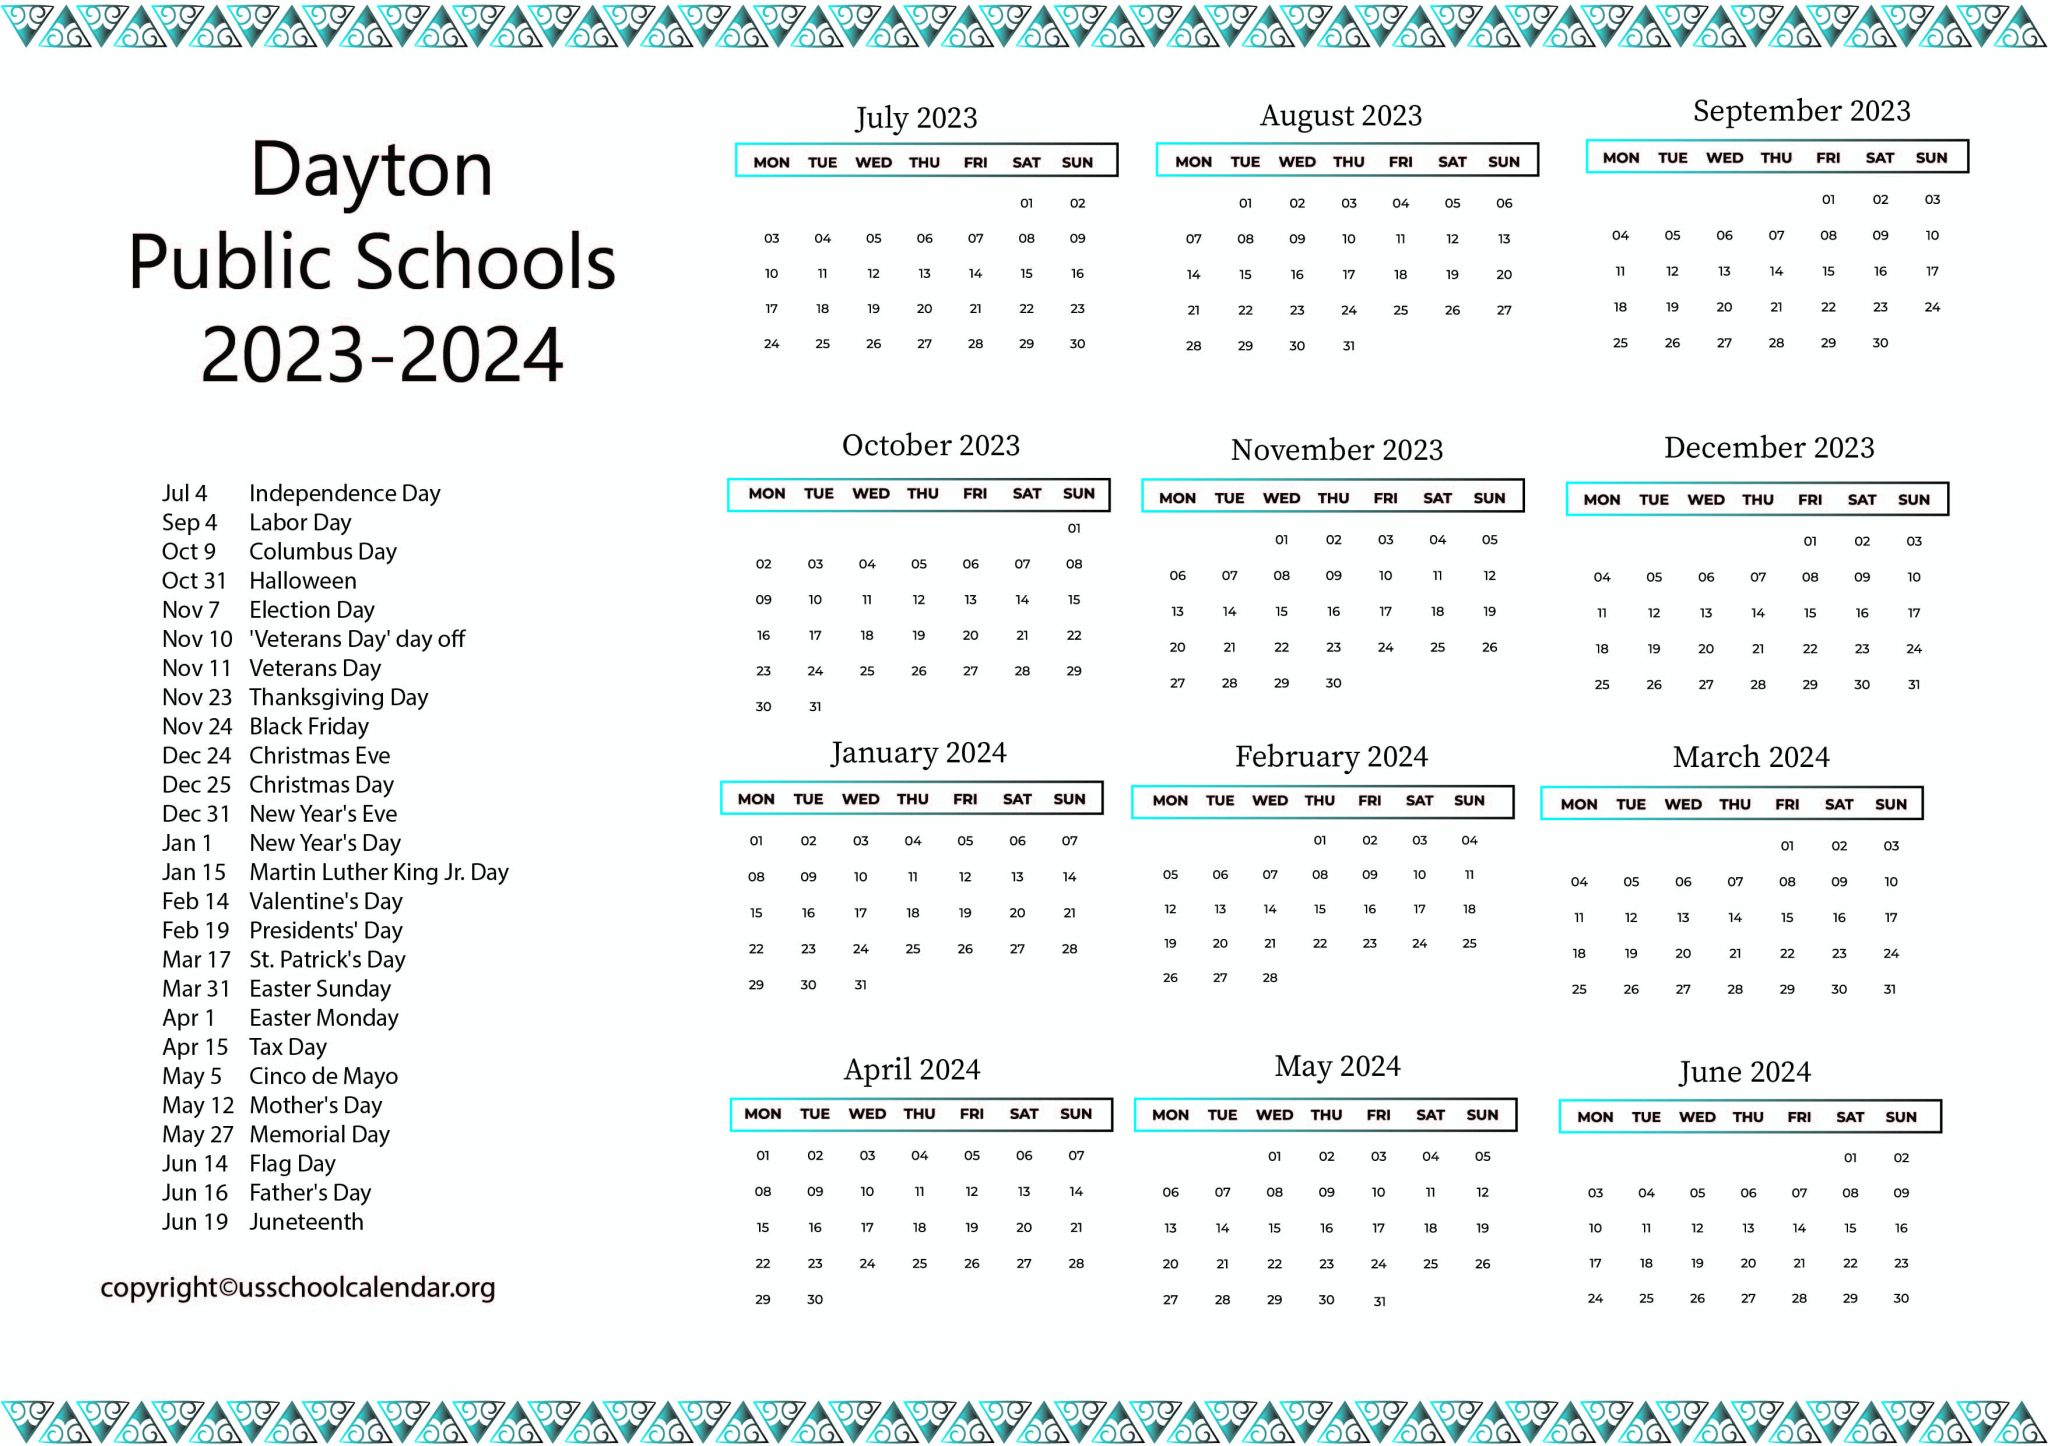 Dayton Public Schools Calendar With Holidays 2023 2024